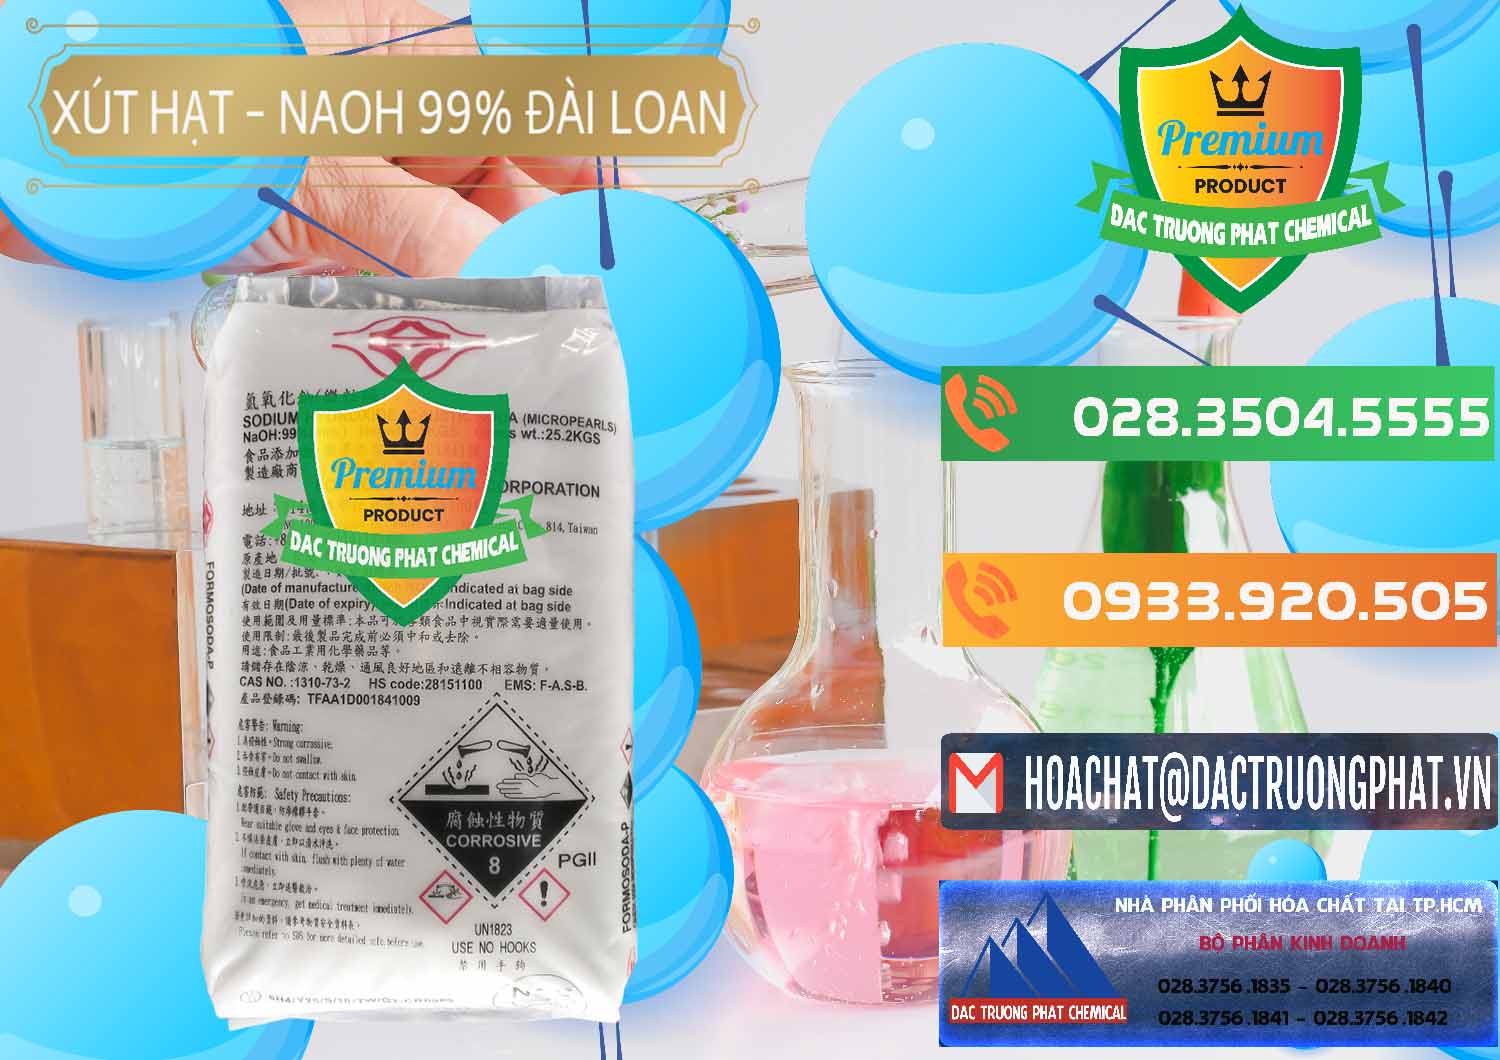 Cty kinh doanh và bán Xút Hạt - NaOH Bột 99% Đài Loan Taiwan Formosa - 0167 - Cty phân phối ( cung cấp ) hóa chất tại TP.HCM - hoachatxulynuoc.com.vn